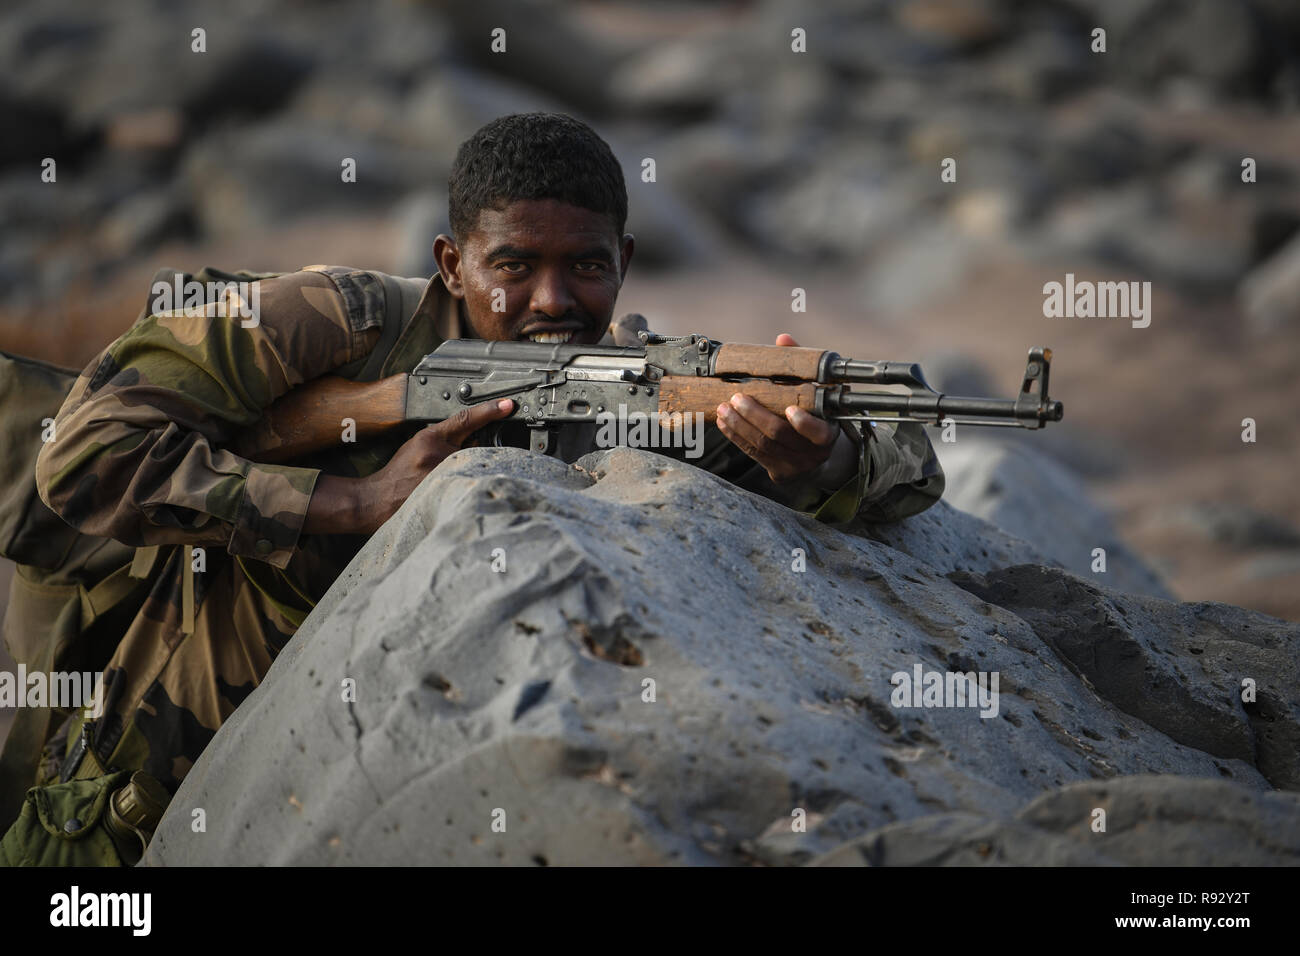 Ein djiboutian Soldat mit dem schnellen Eingreifen Bataillon während Infanterie Taktik und Verfahren Ausbildung durch die US-Streitkräfte bis zum 18. Dezember 2018 in der Nähe von Dschibuti Dschibuti Stadt Lehrte. Stockfoto